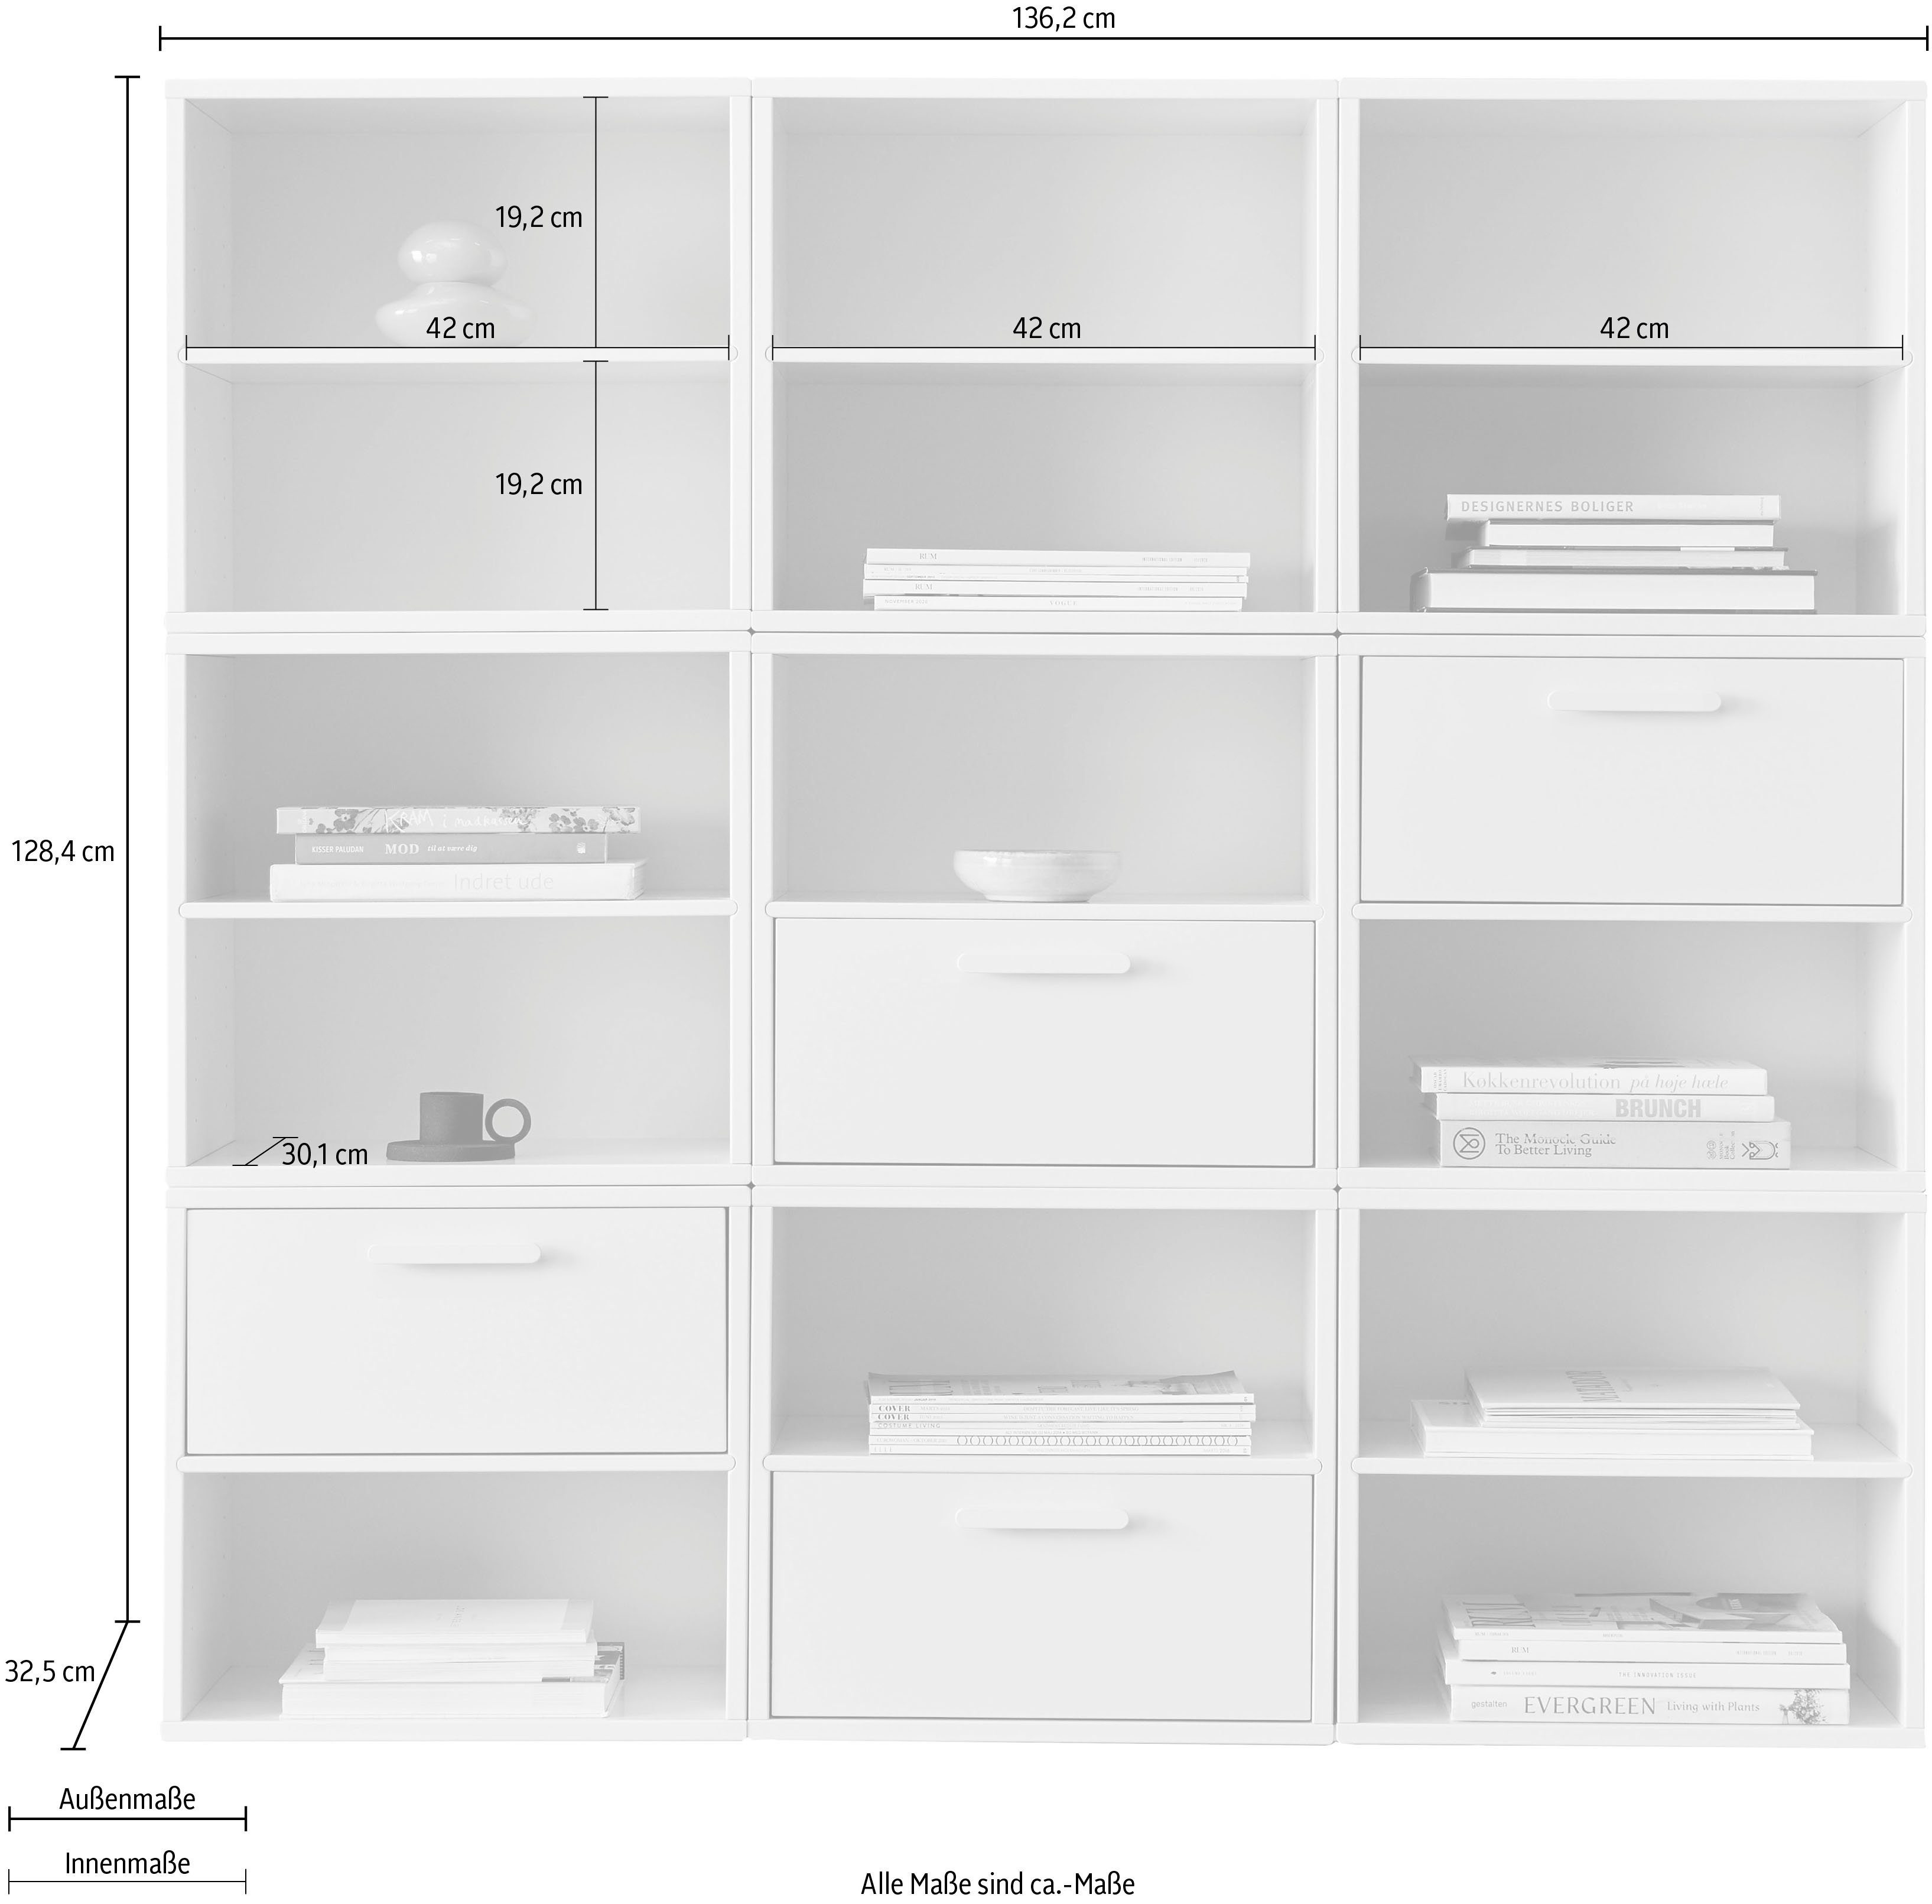 Hammel Furniture Bücherregal by 9 4 Hammel, unterschiedl.farbenen aus 136,2 Modulen, Breite mit Schubladen, cm Keep